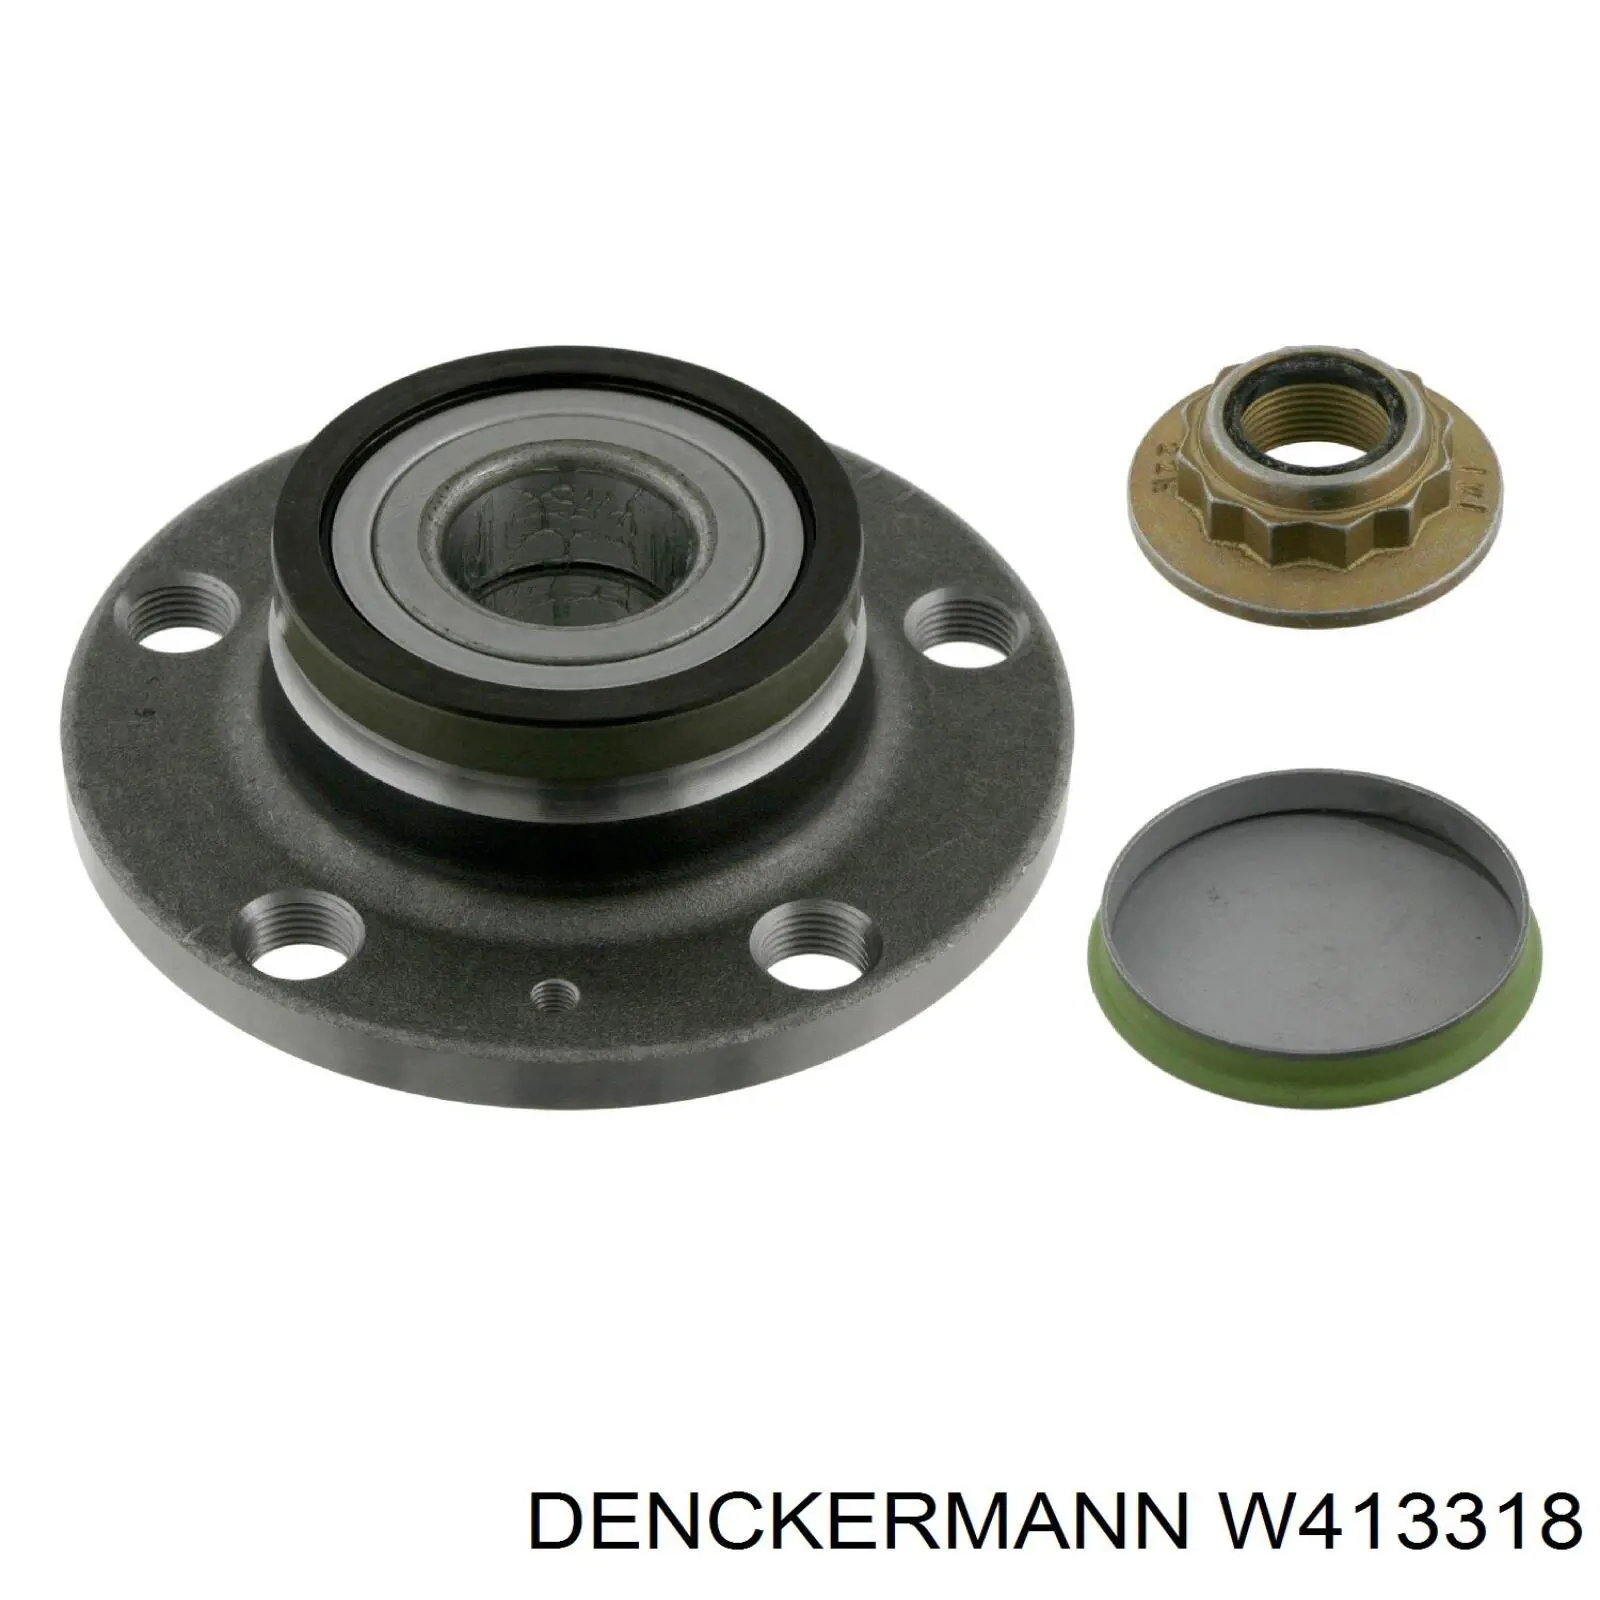 W413318 Denckermann cubo de rueda trasero